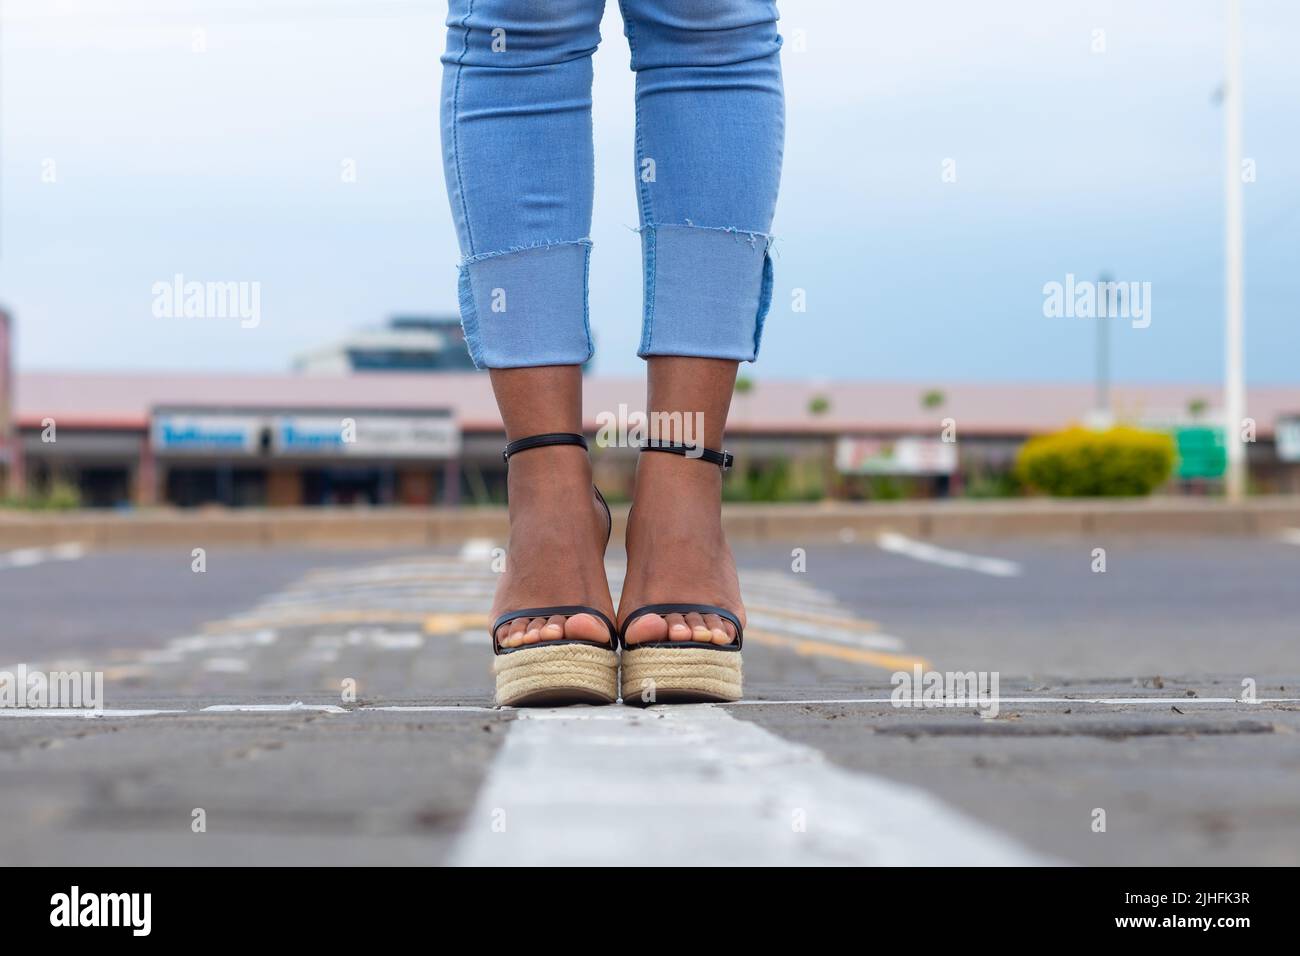 Femme en Jean bleu élégant et sandales compensées debout dans une rue urbaine. Banque D'Images